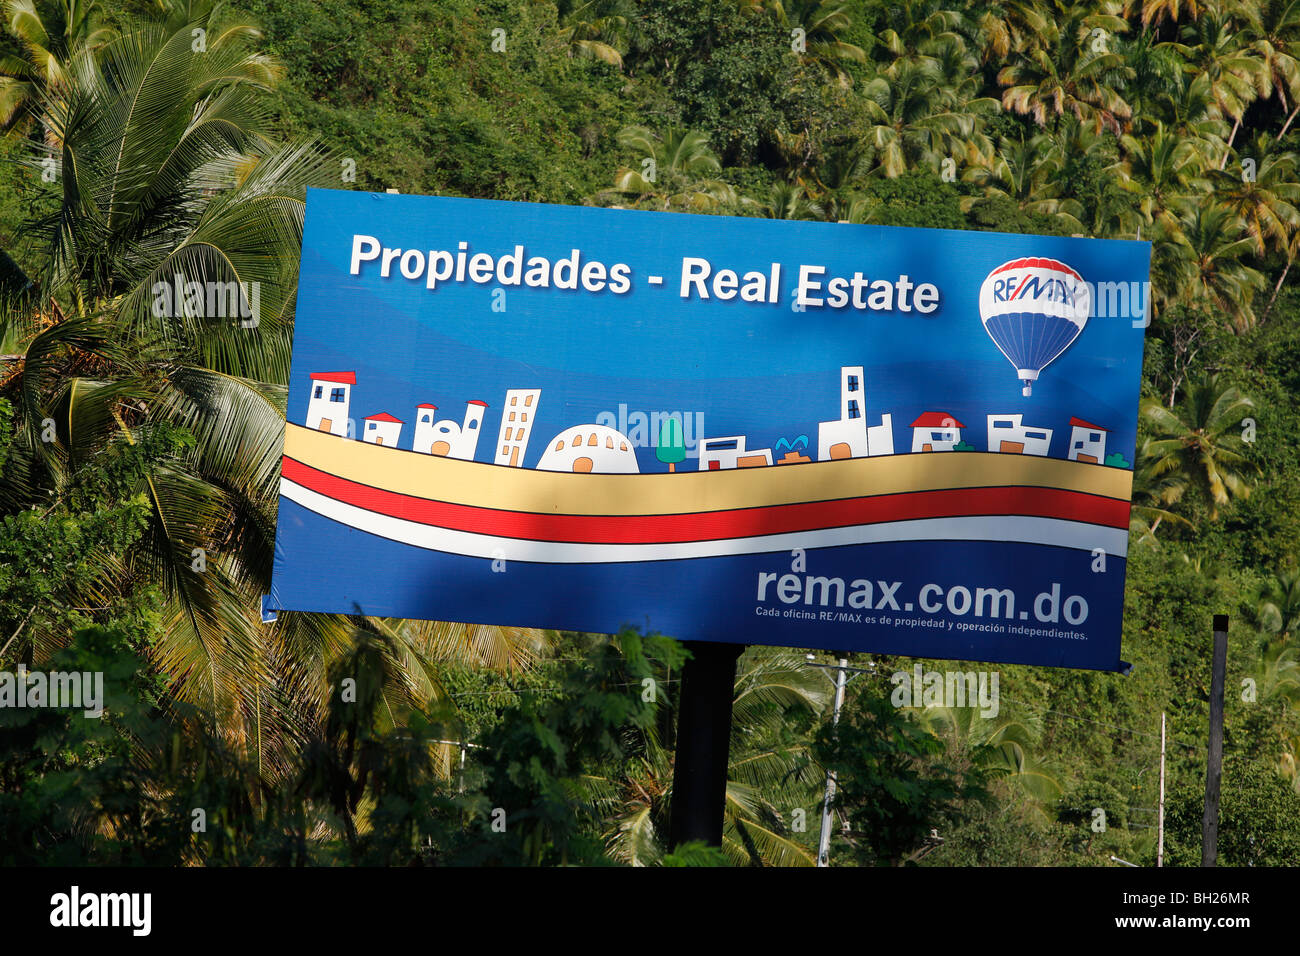 La publicidad de bienes raíces, República Dominicana Foto de stock